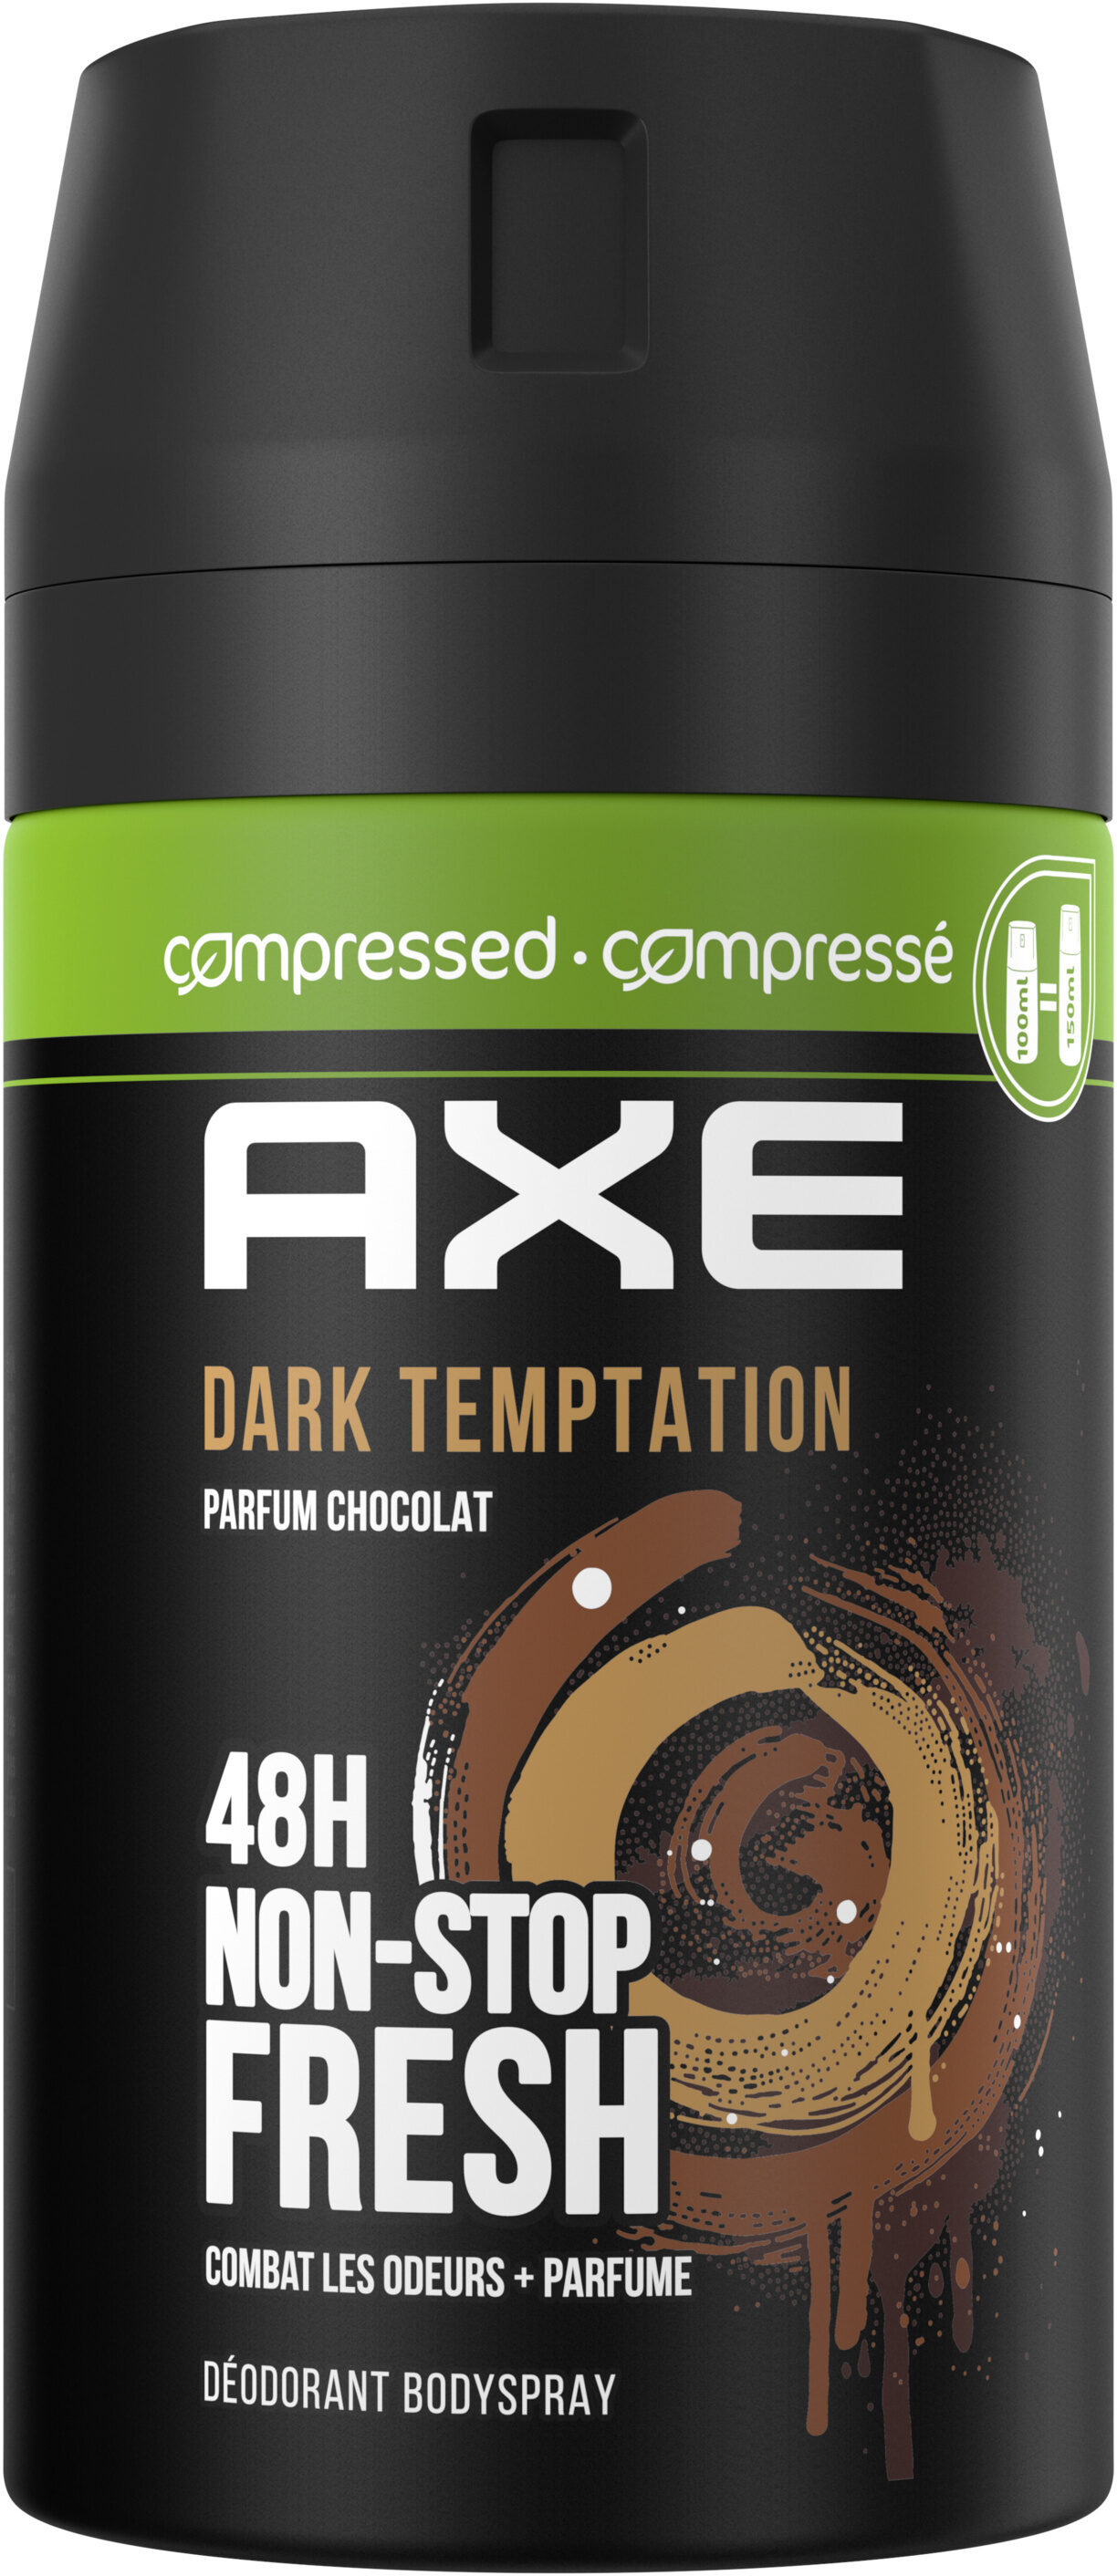 Axe bs dark temp 100ml - Product - fr